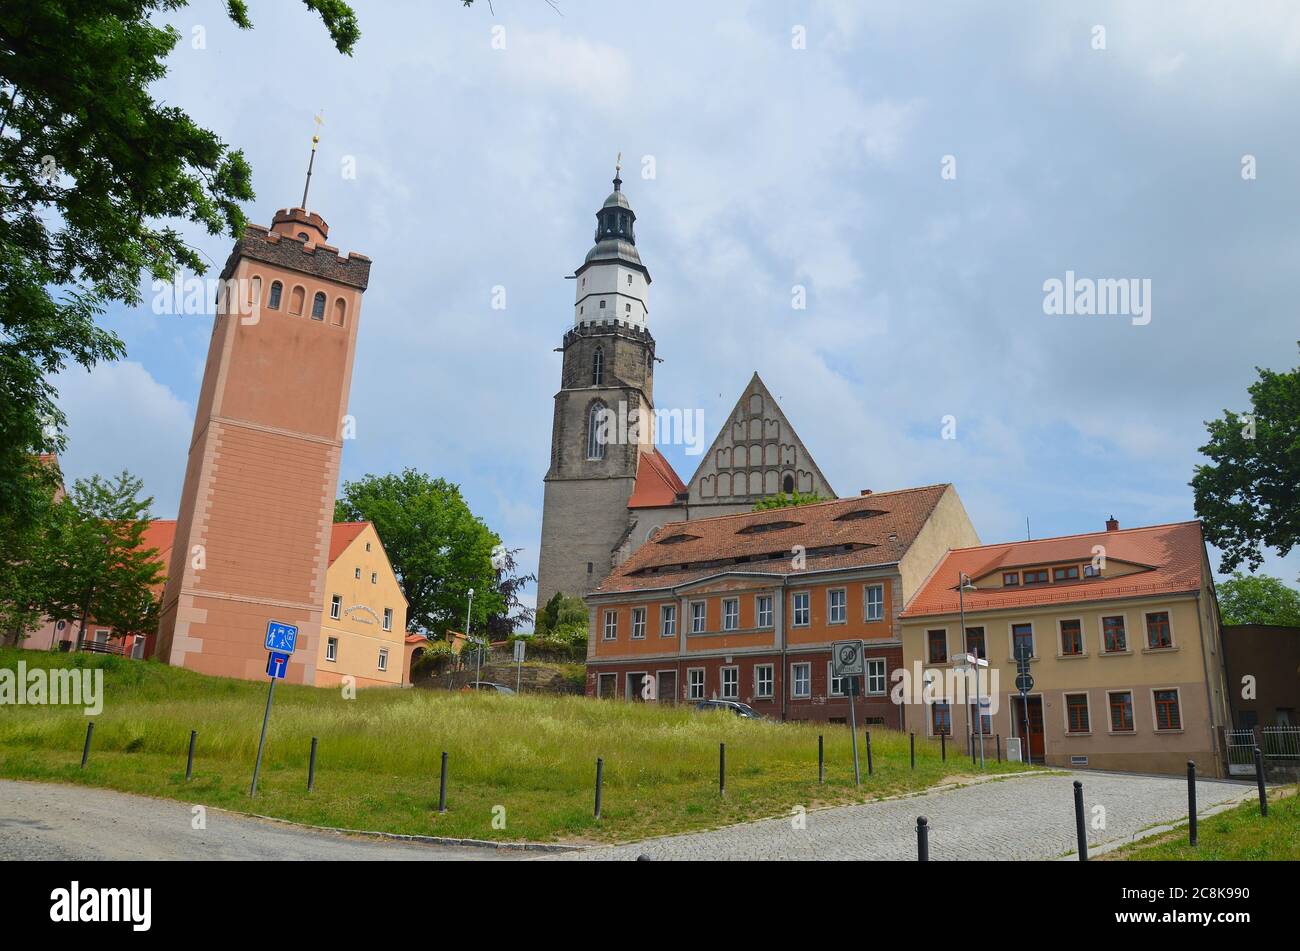 Die Lessing-Stadt Kamenz in Sachsen, Oberlausitz, Deutschland, im sorbischen Siedlungsgebiet, die Stadtkirche Stock Photo